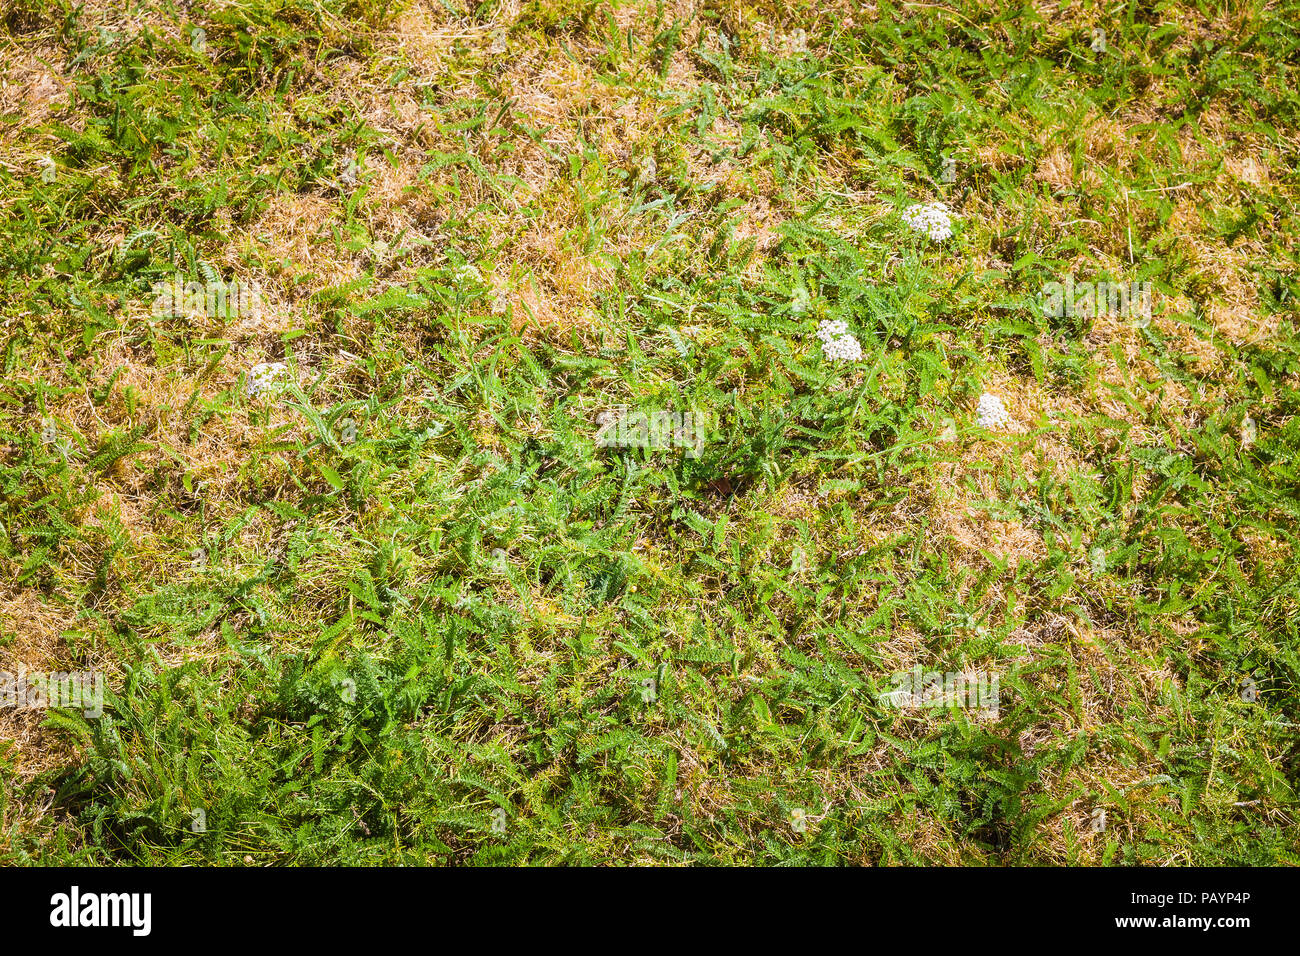 Mehrjährigen Unkräutern (Schafgarbe) in einem englischen Rasen überleben eine längere Hitzewelle besser als Rasen Gras im Juli das stirbt auf der Oberfläche Stockfoto